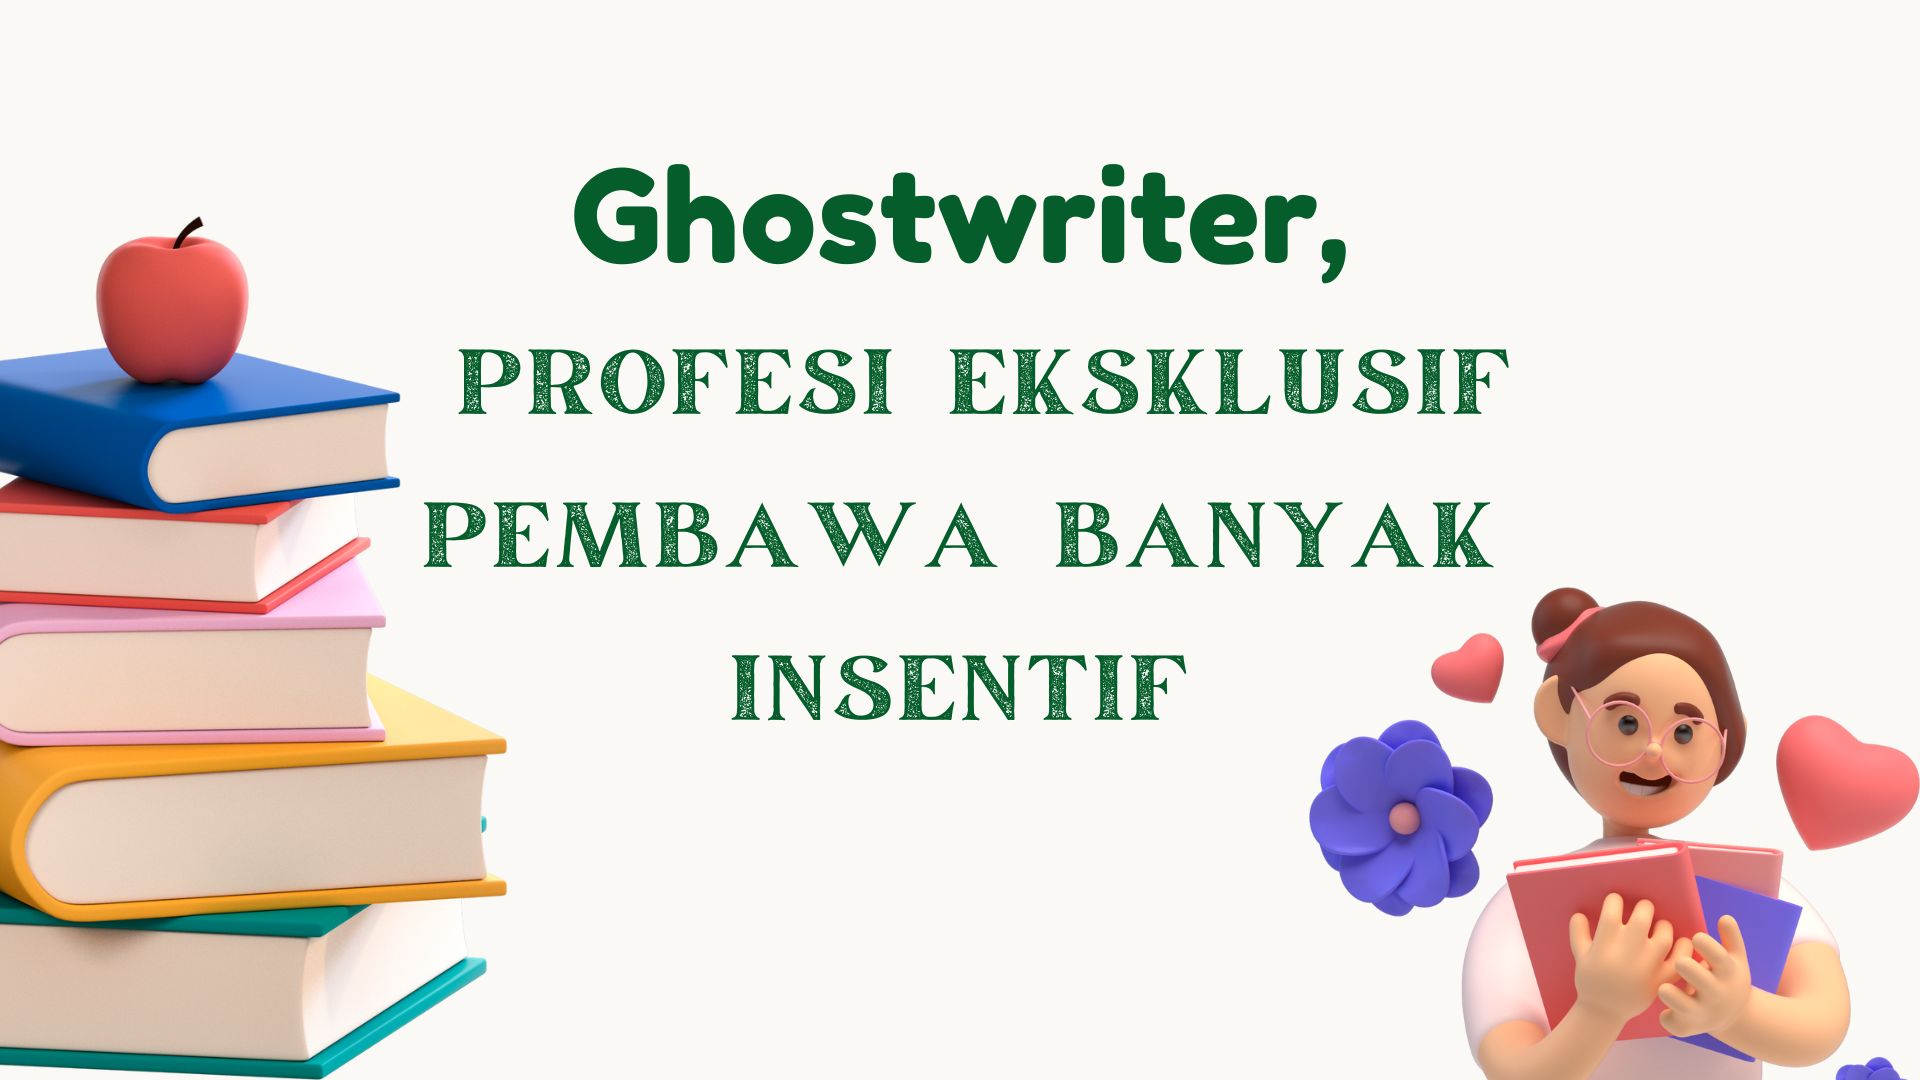 Ghostwriter, Profesi Eksklusif Pembawa Banyak Insentif